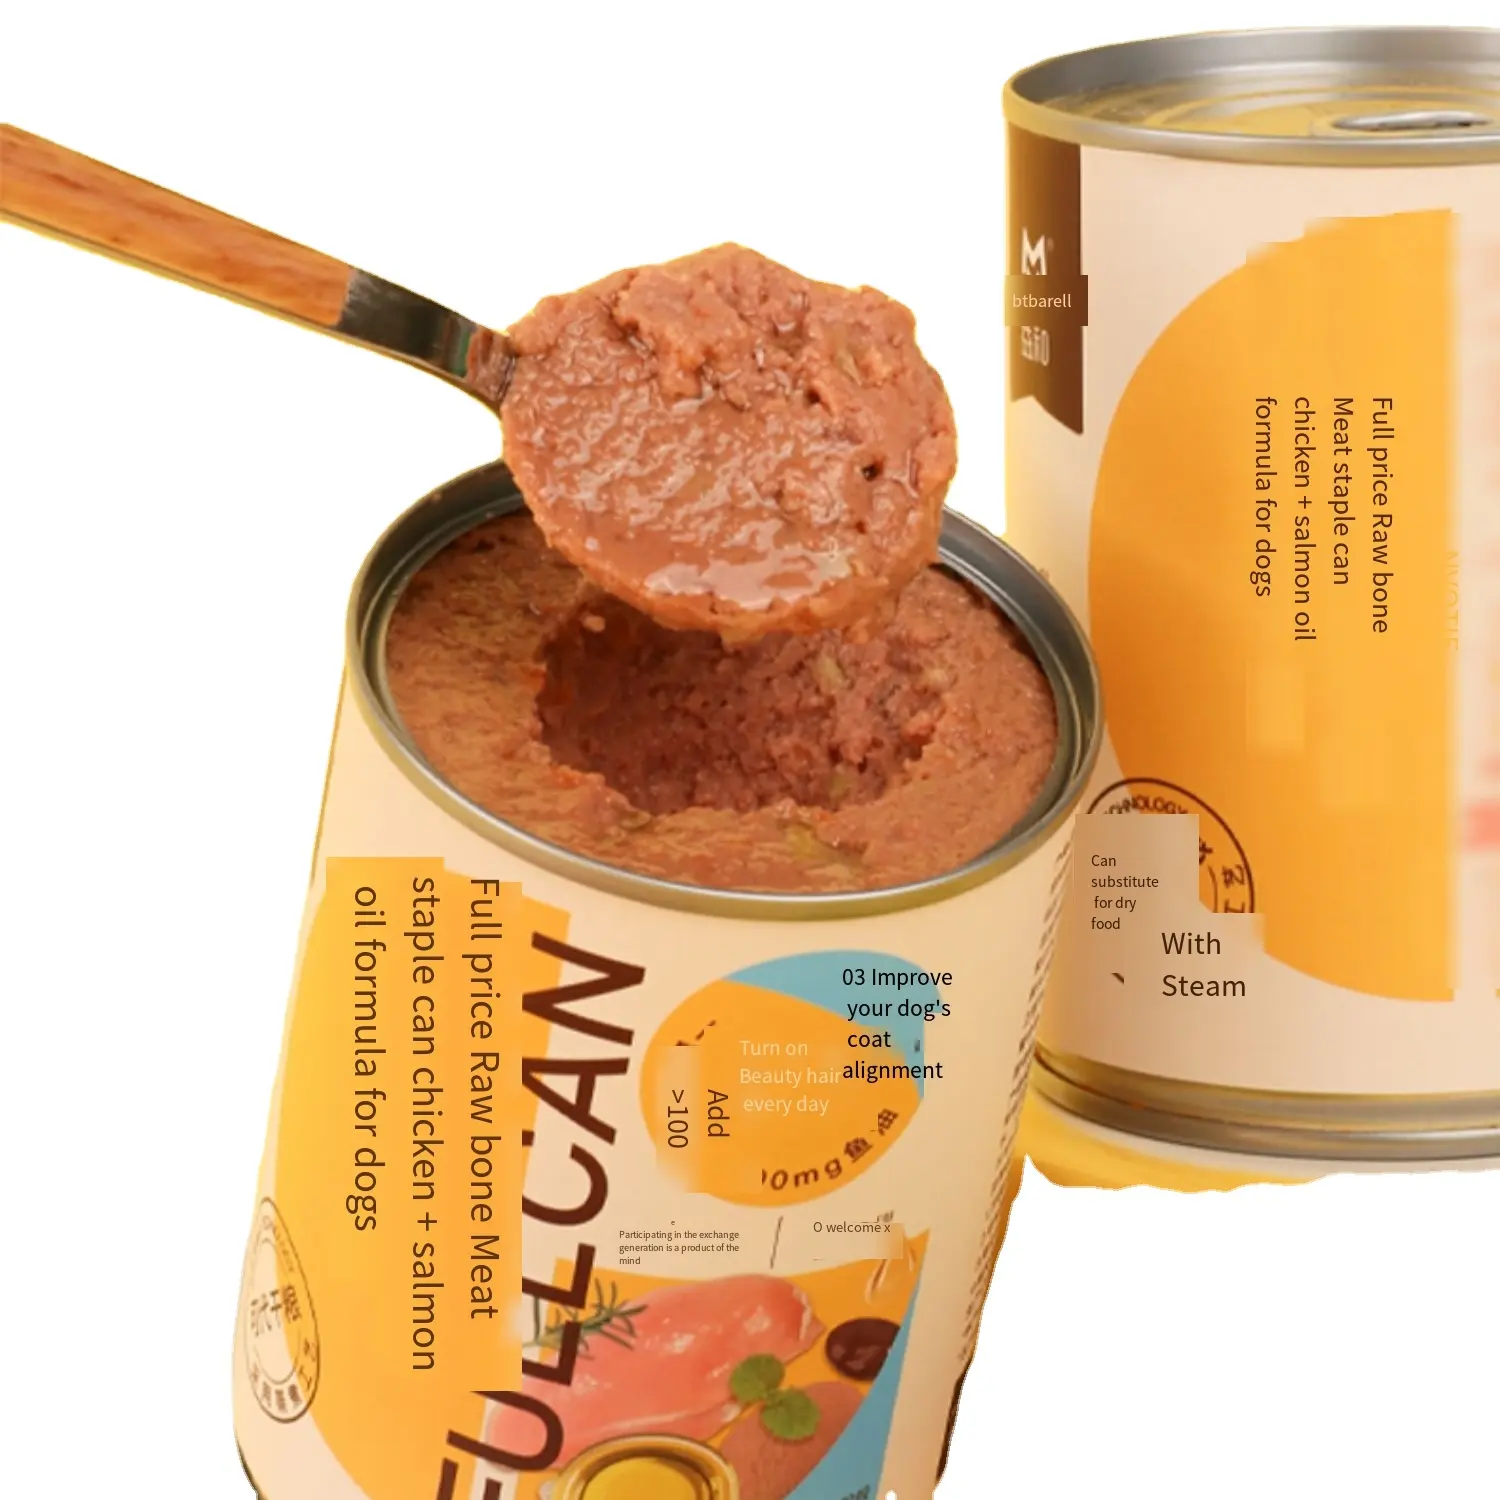 Toptan pet köpek maması luiscous köpek tavuk yemeği konserve köpek maması ıslak üretim hattı için popüler 375g